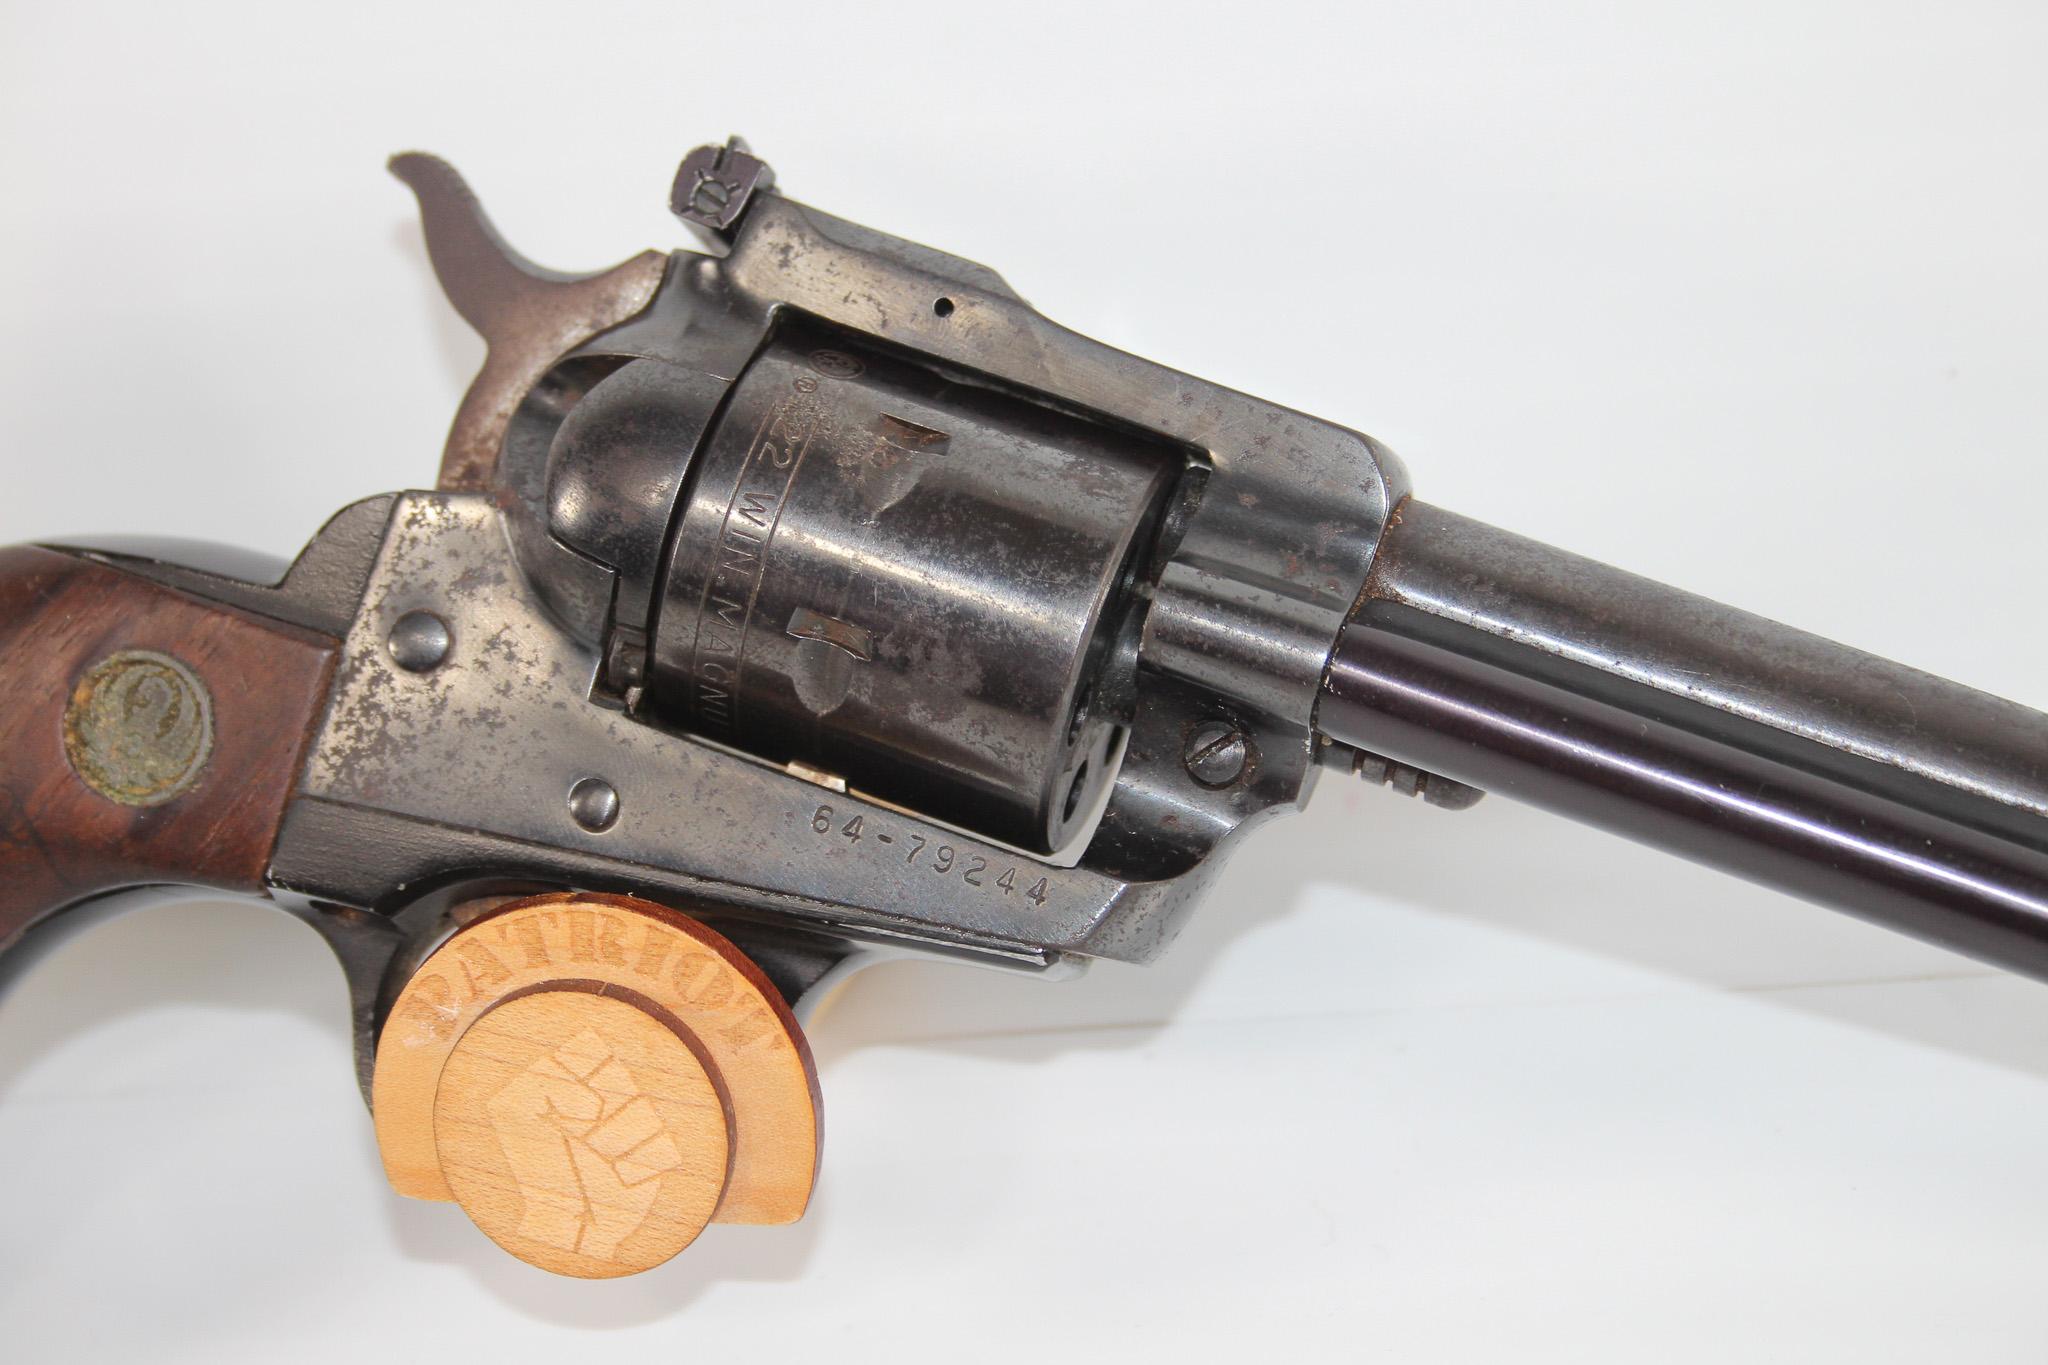 Ruger Single 6 .22 revolver